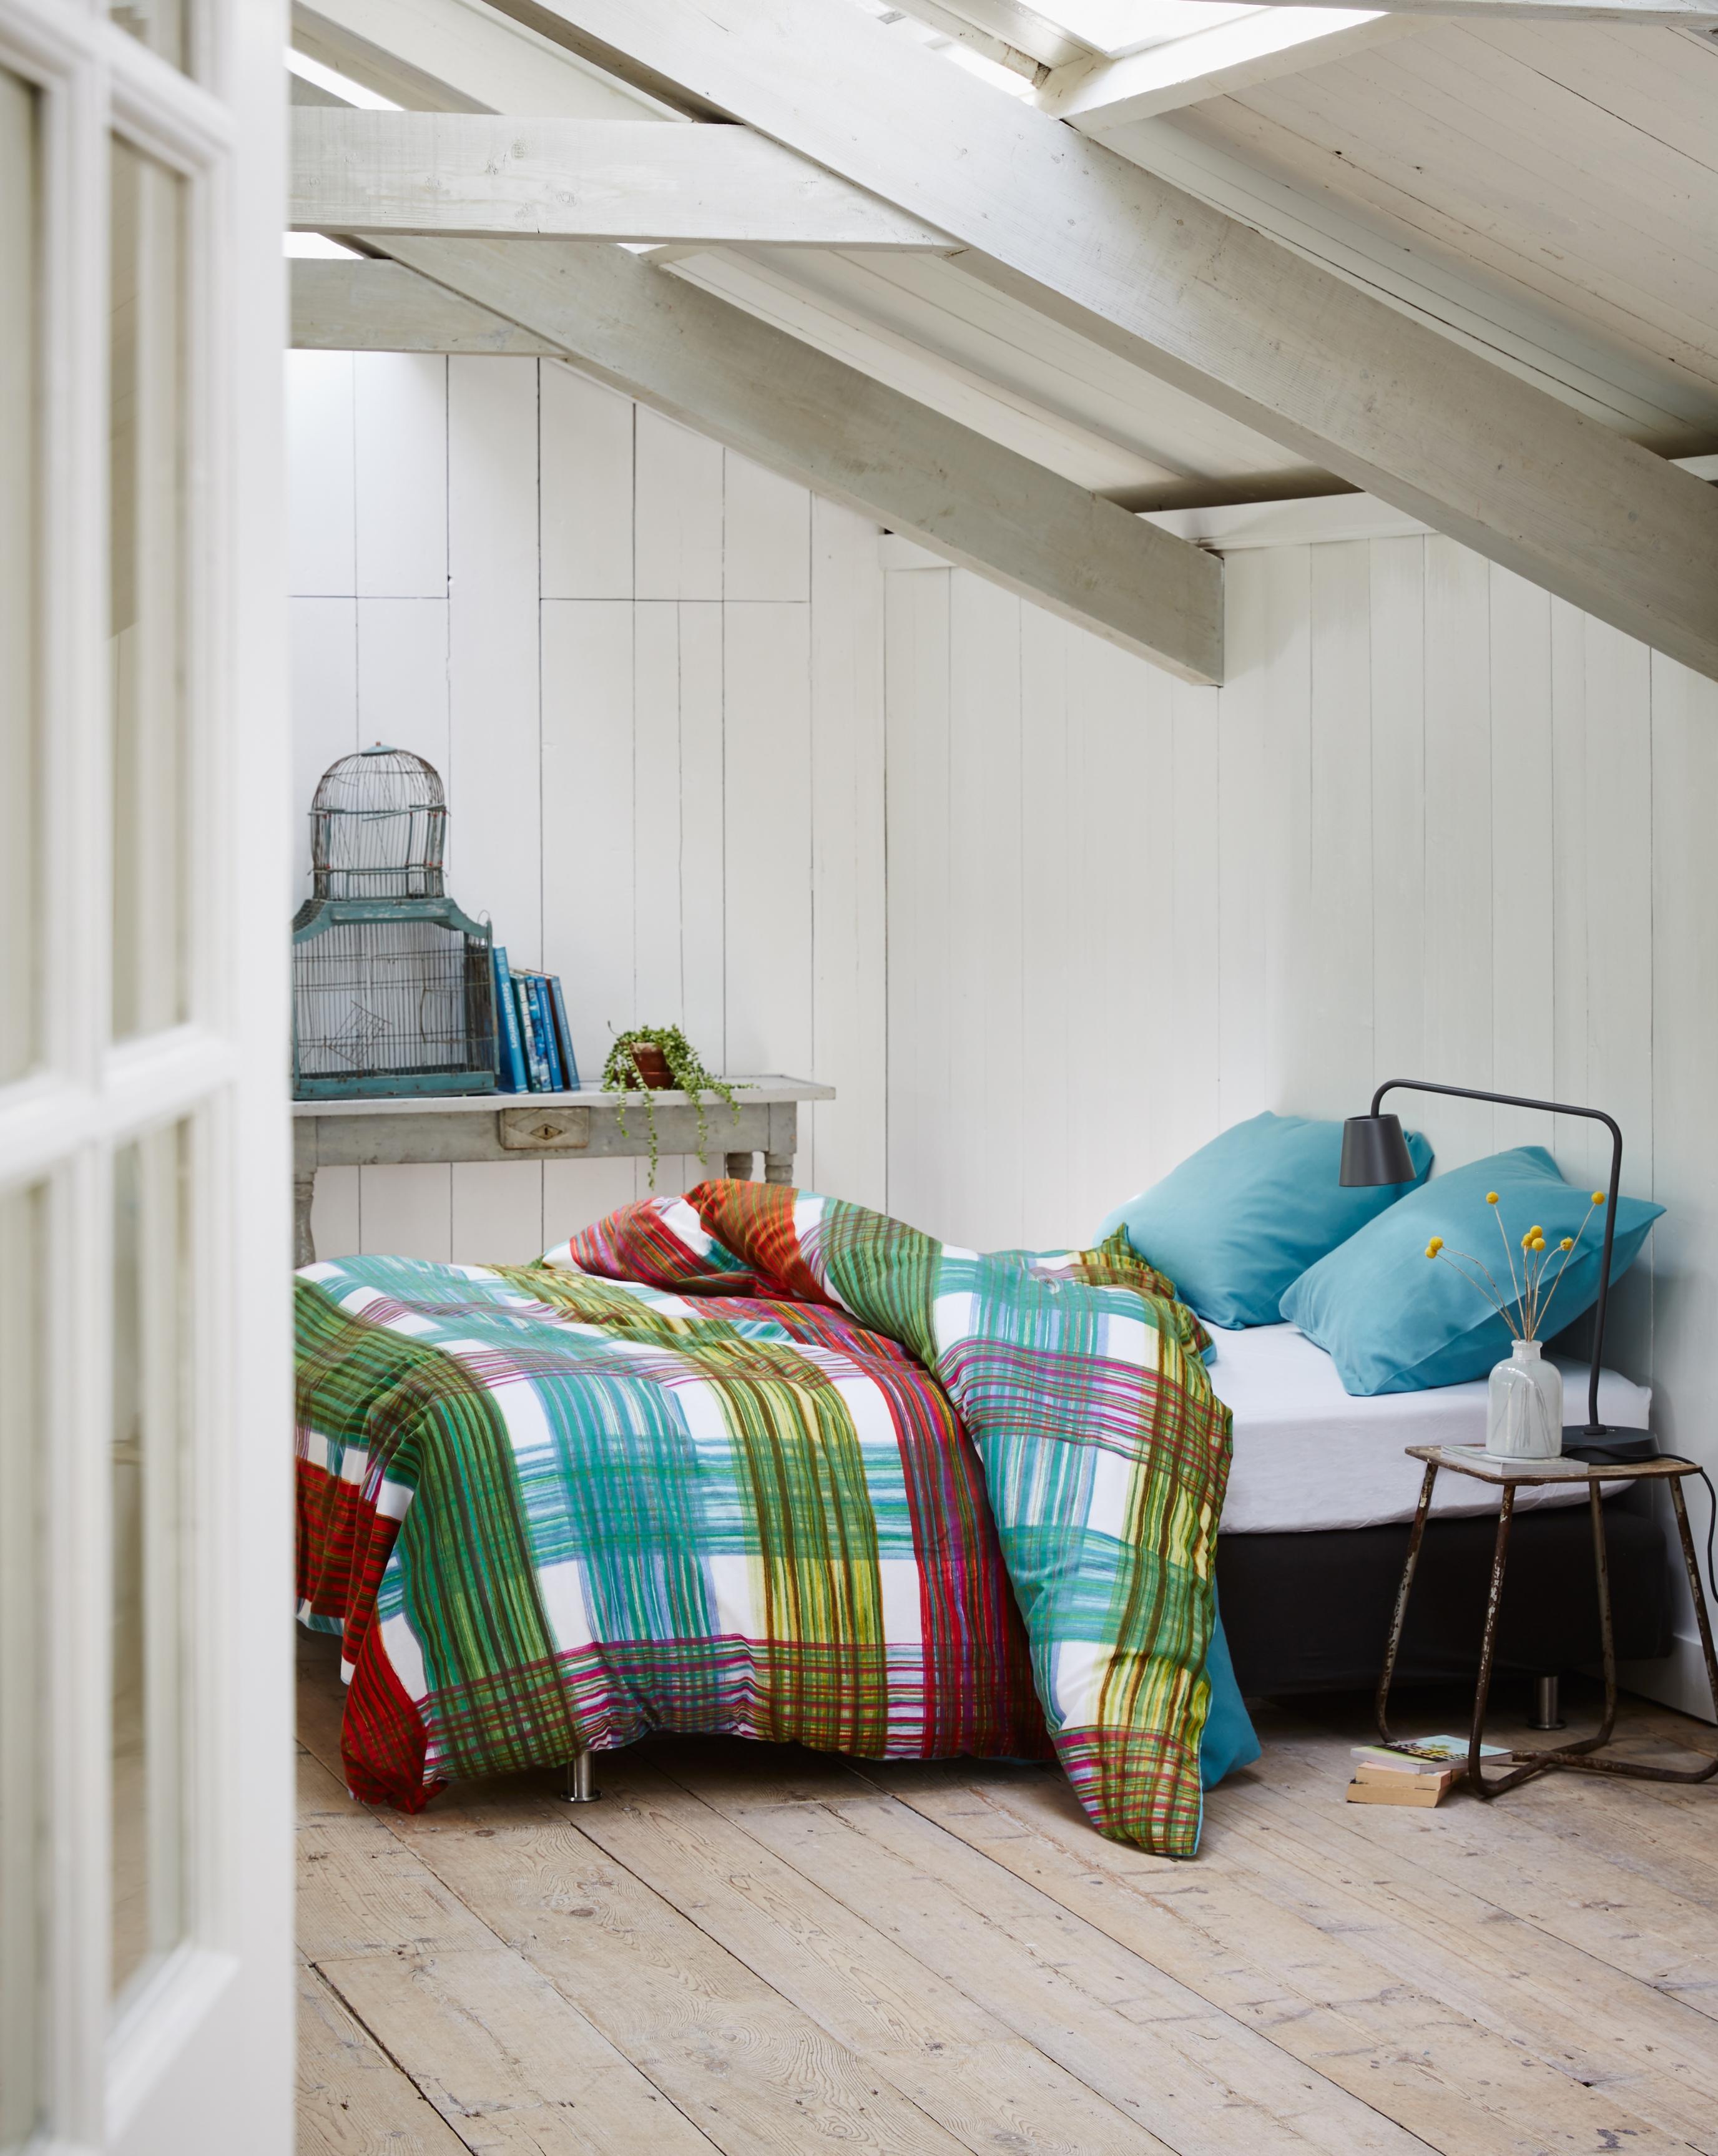 Gemütliches Schlafzimmer unter dem Dach #bett #dielenboden #bettwäsche #buntebettwäsche #zimmergestaltung ©Essenza Home/Vanezza